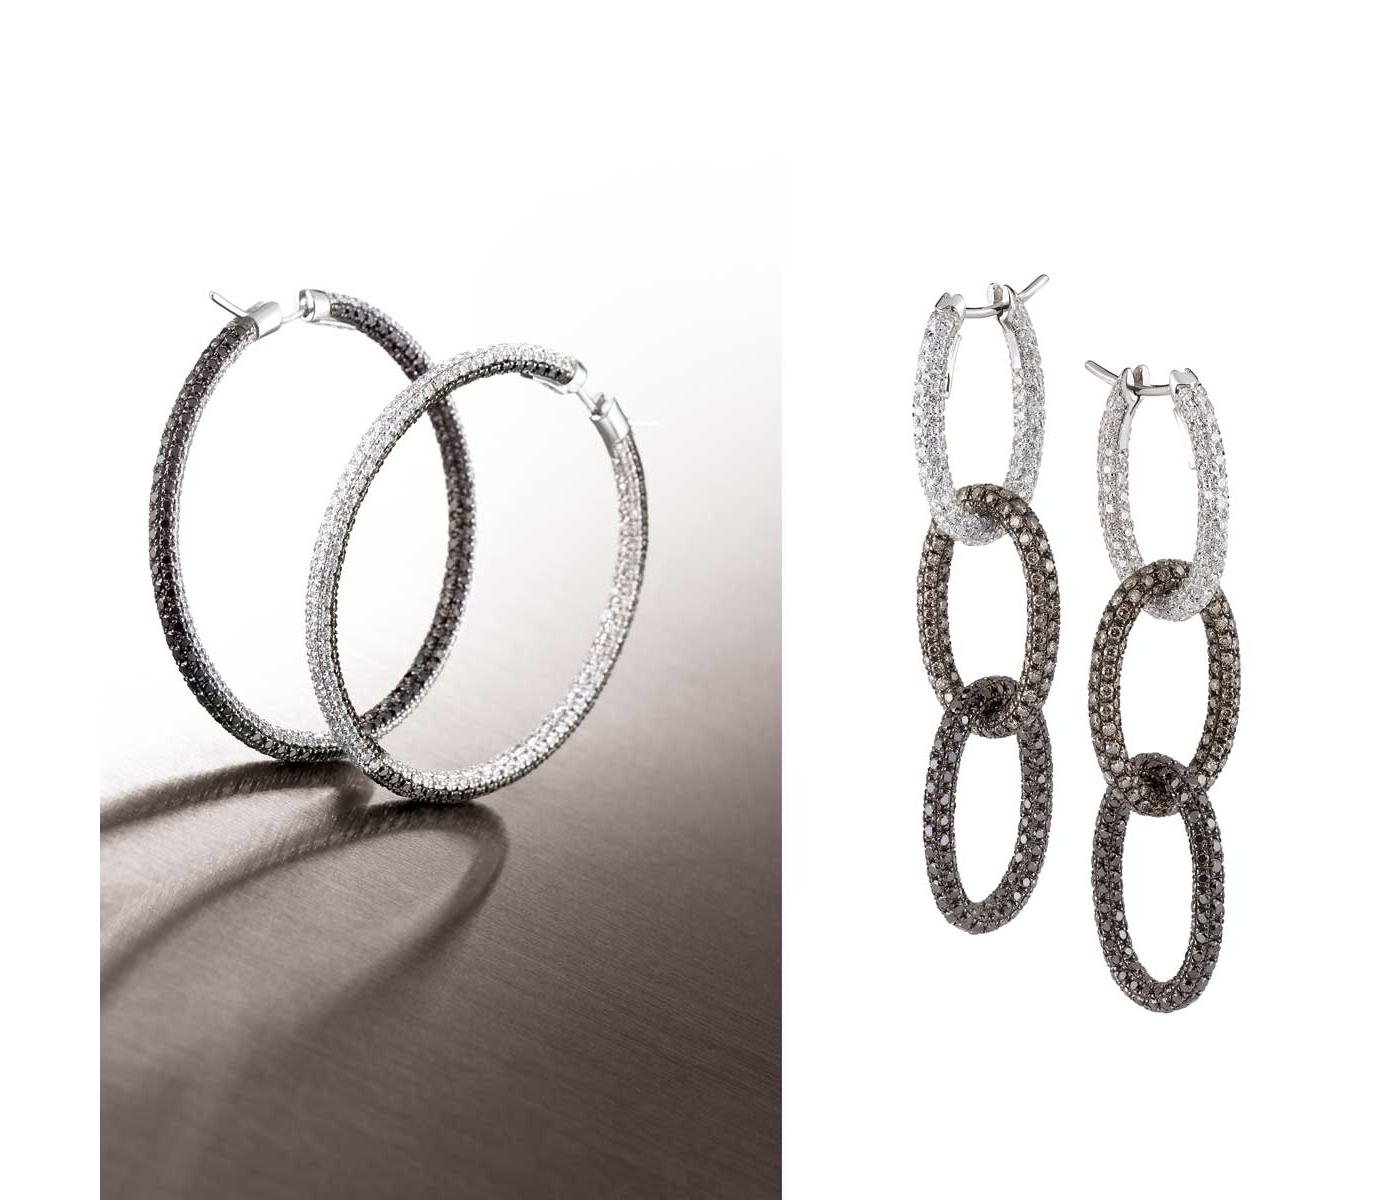 Earrings by Garavelli